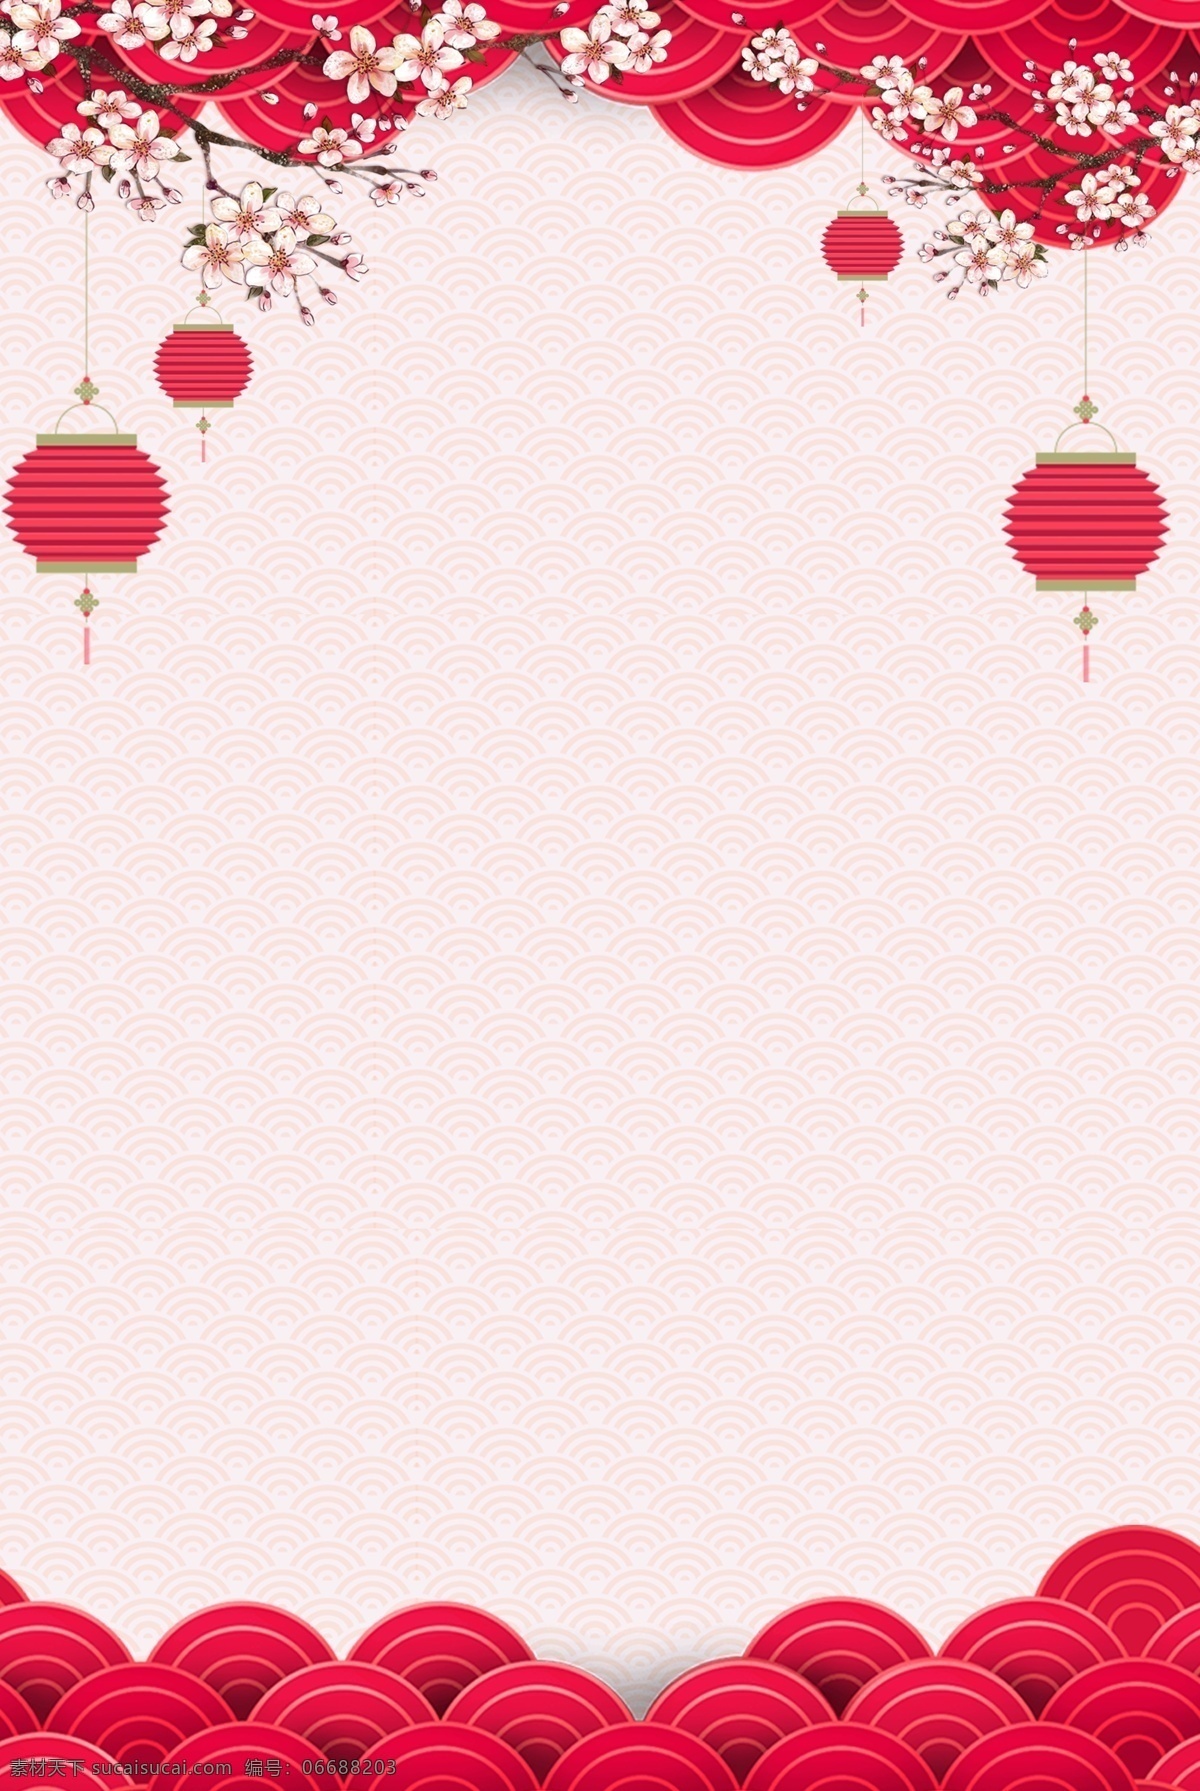 中国 风 红色 背景 中国风 红色背景 喜庆 庆祝 新年 元旦 红火 分层 透底图 源文件 设计素材 海报 简约 简单 灯笼 祥云 梅花